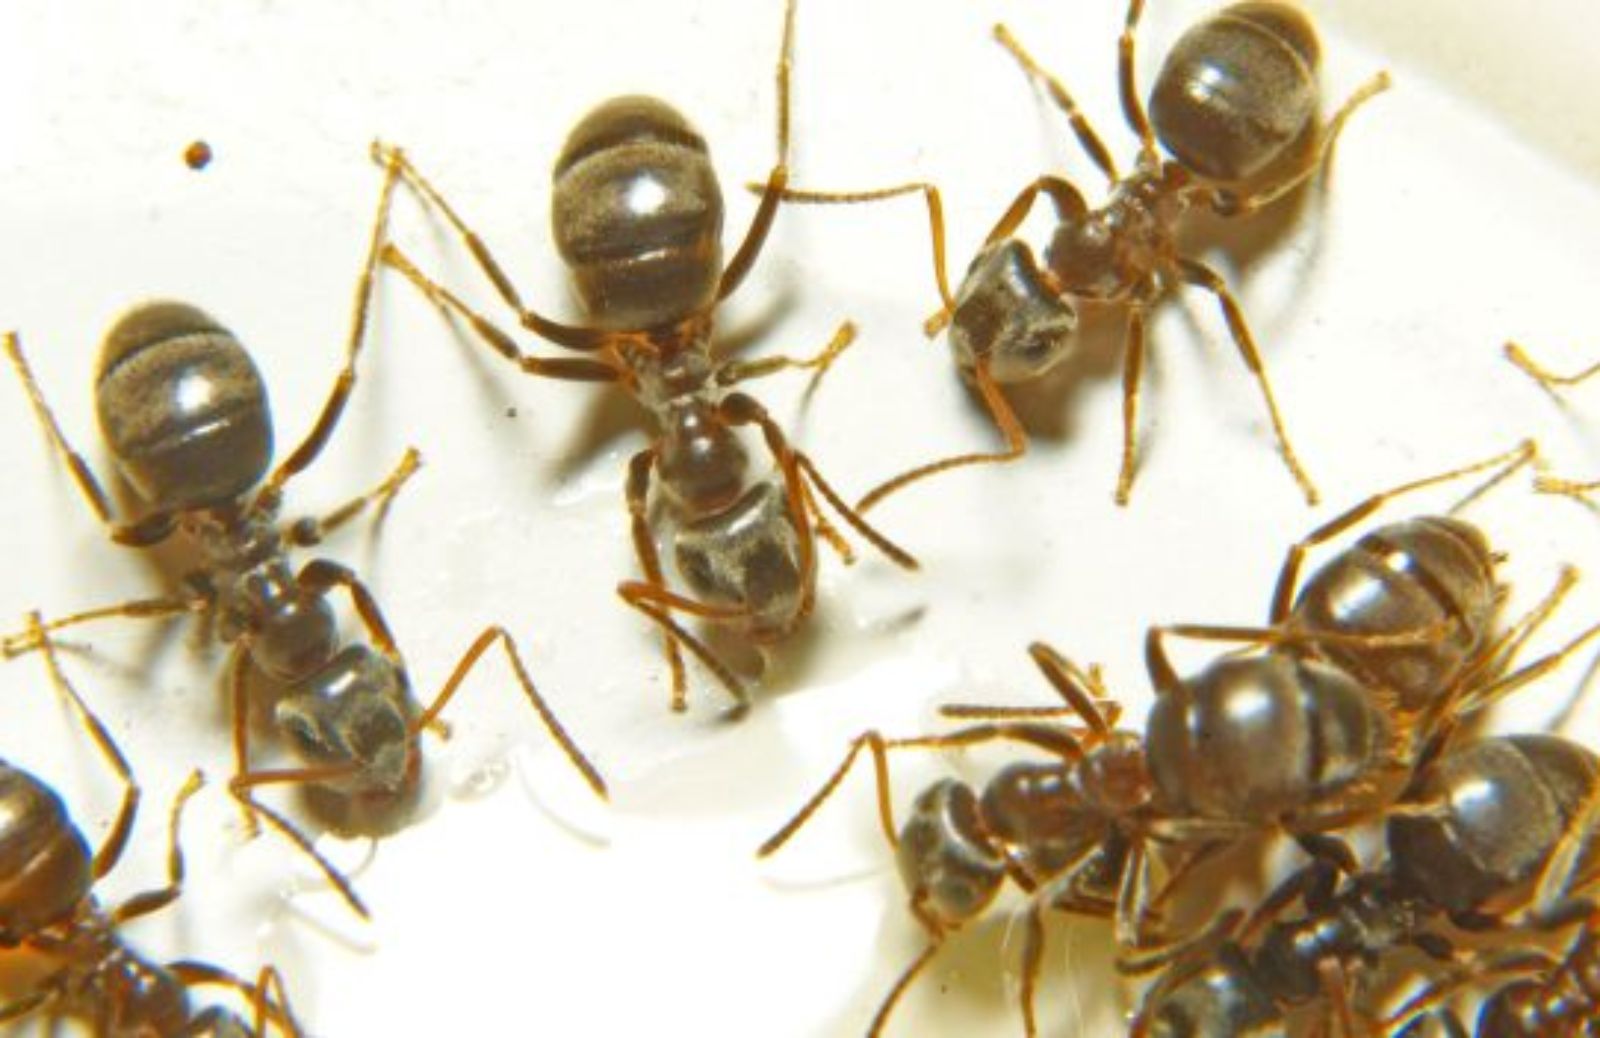 Come fermare l'invasione di formiche con prodotti naturali